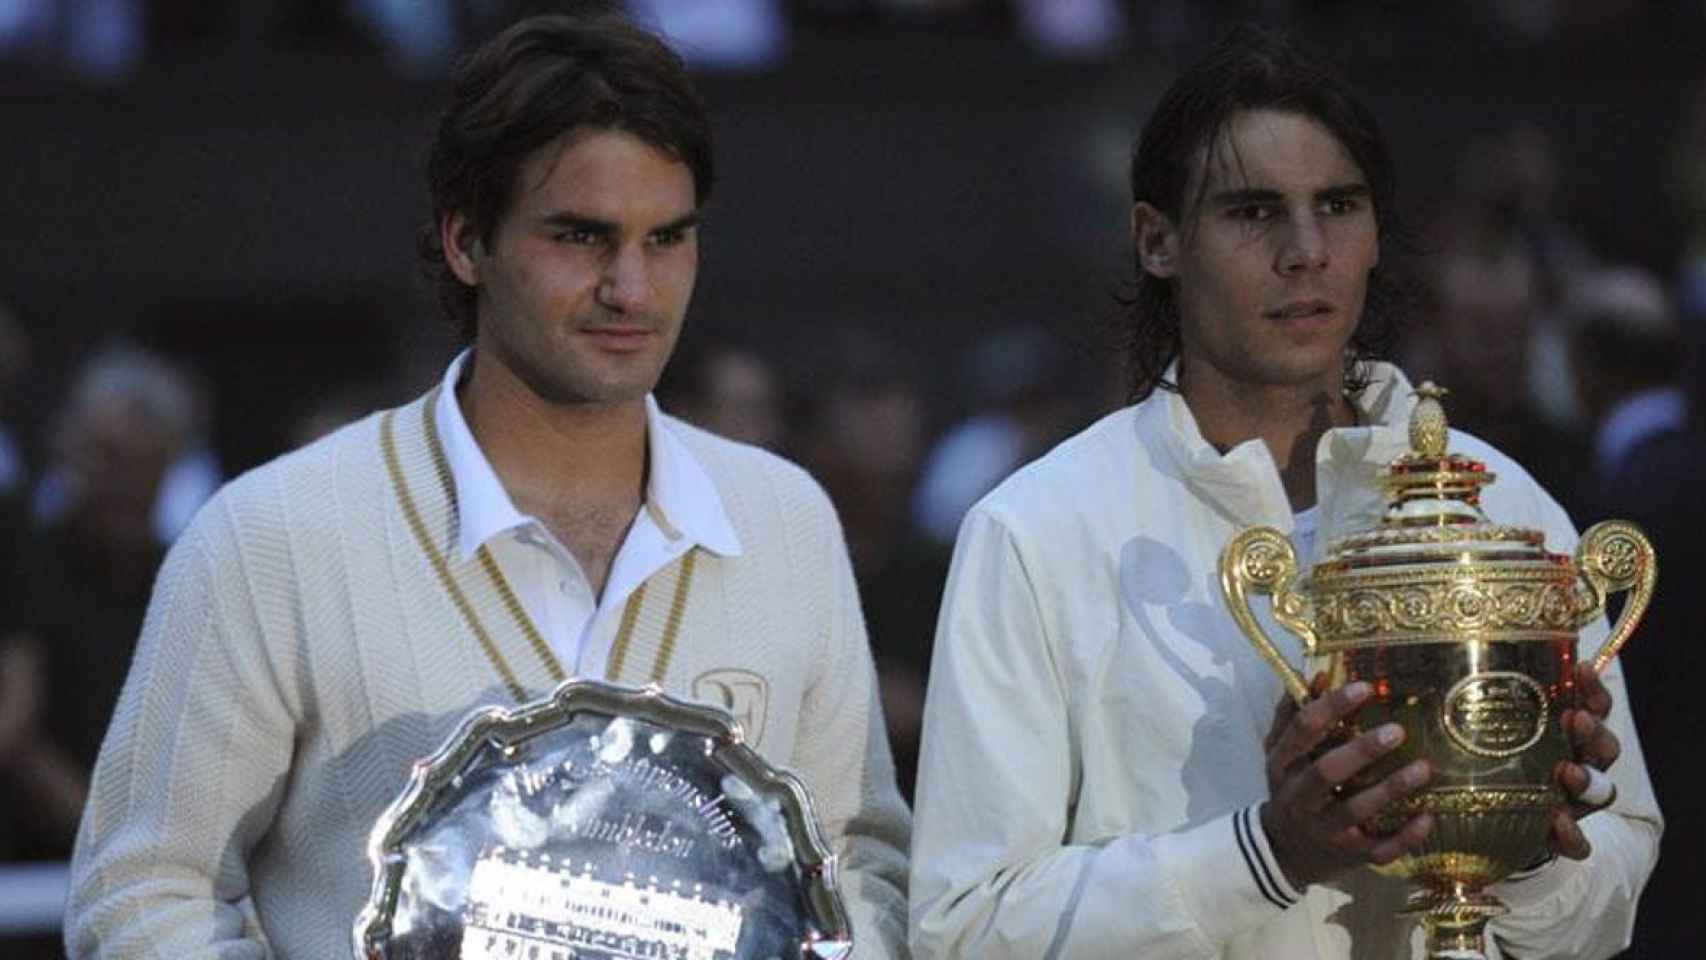 Roger Federer y Rafa Nadal en la final de Wimbledon 2008